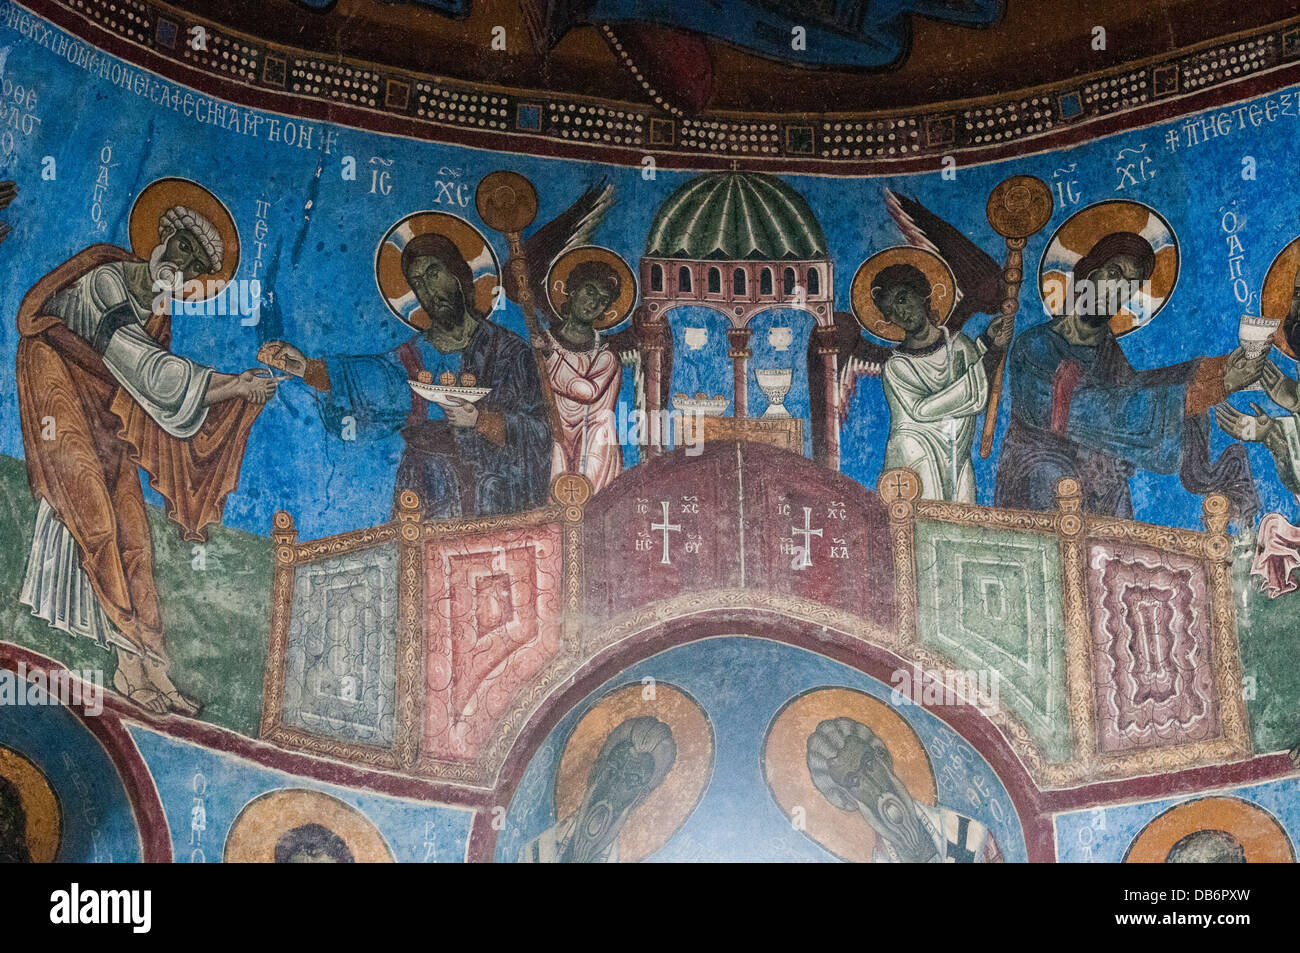 Fresques du 13e siècle classé au Patrimoine Mondial de l'Akhtala Monastère, Canyon, dans le nord de l'Arménie Débède Banque D'Images